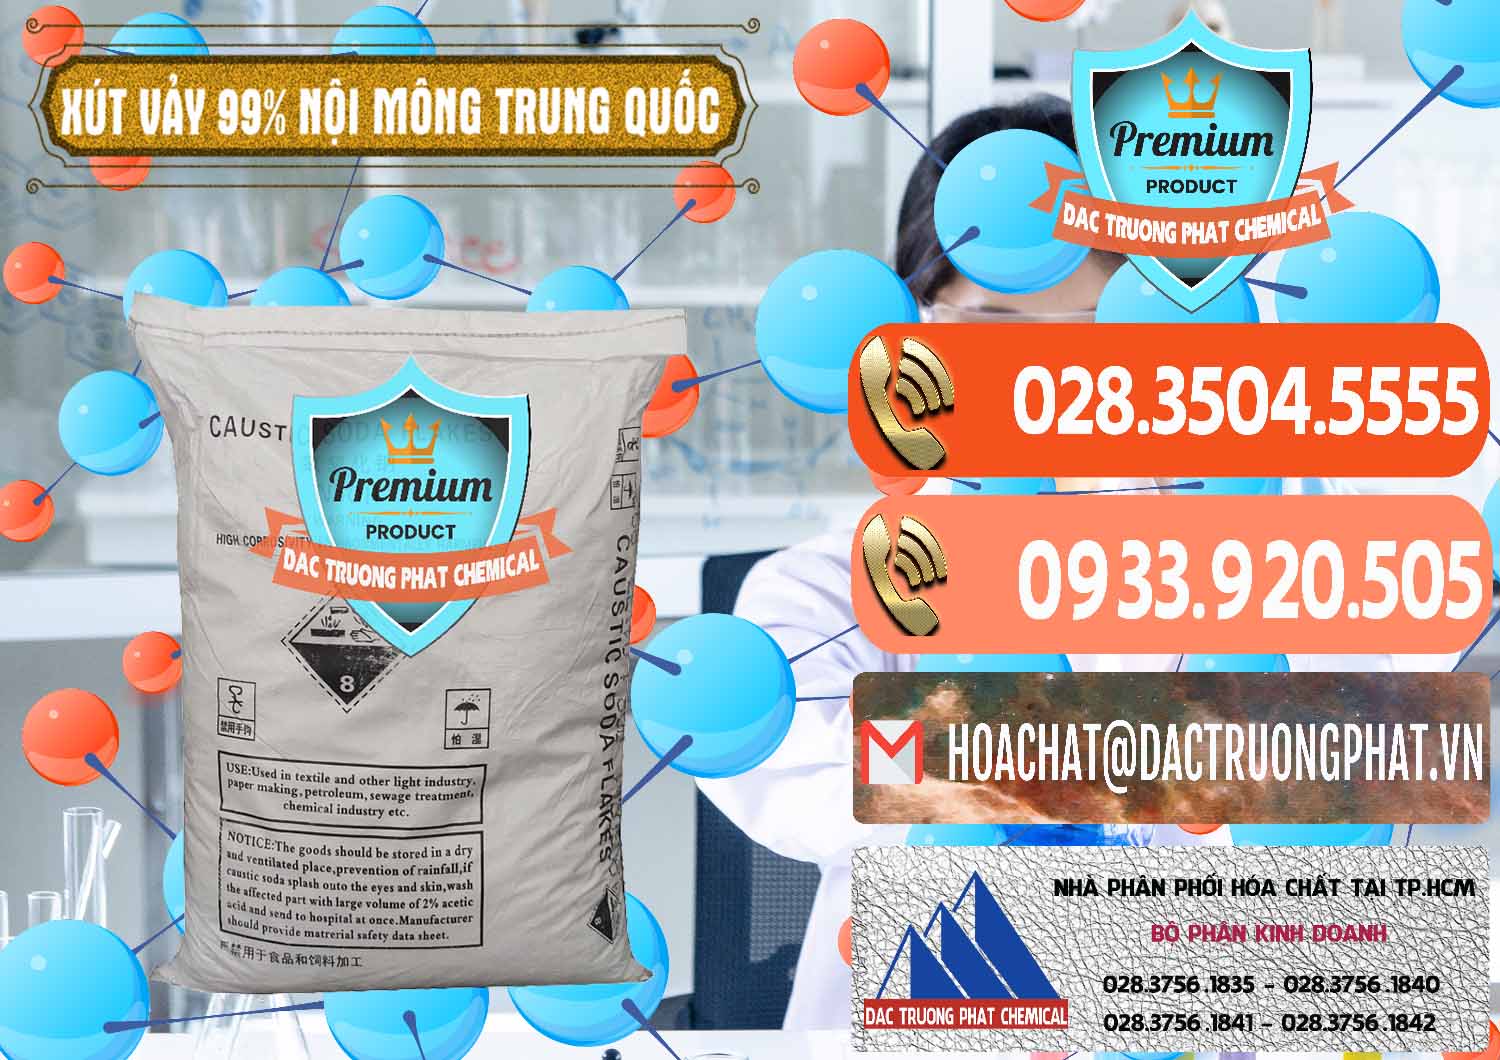 Công ty chuyên bán và cung cấp Xút Vảy - NaOH Vảy 99% Nội Mông Trung Quốc China - 0228 - Nhà cung cấp - phân phối hóa chất tại TP.HCM - hoachatmientay.com